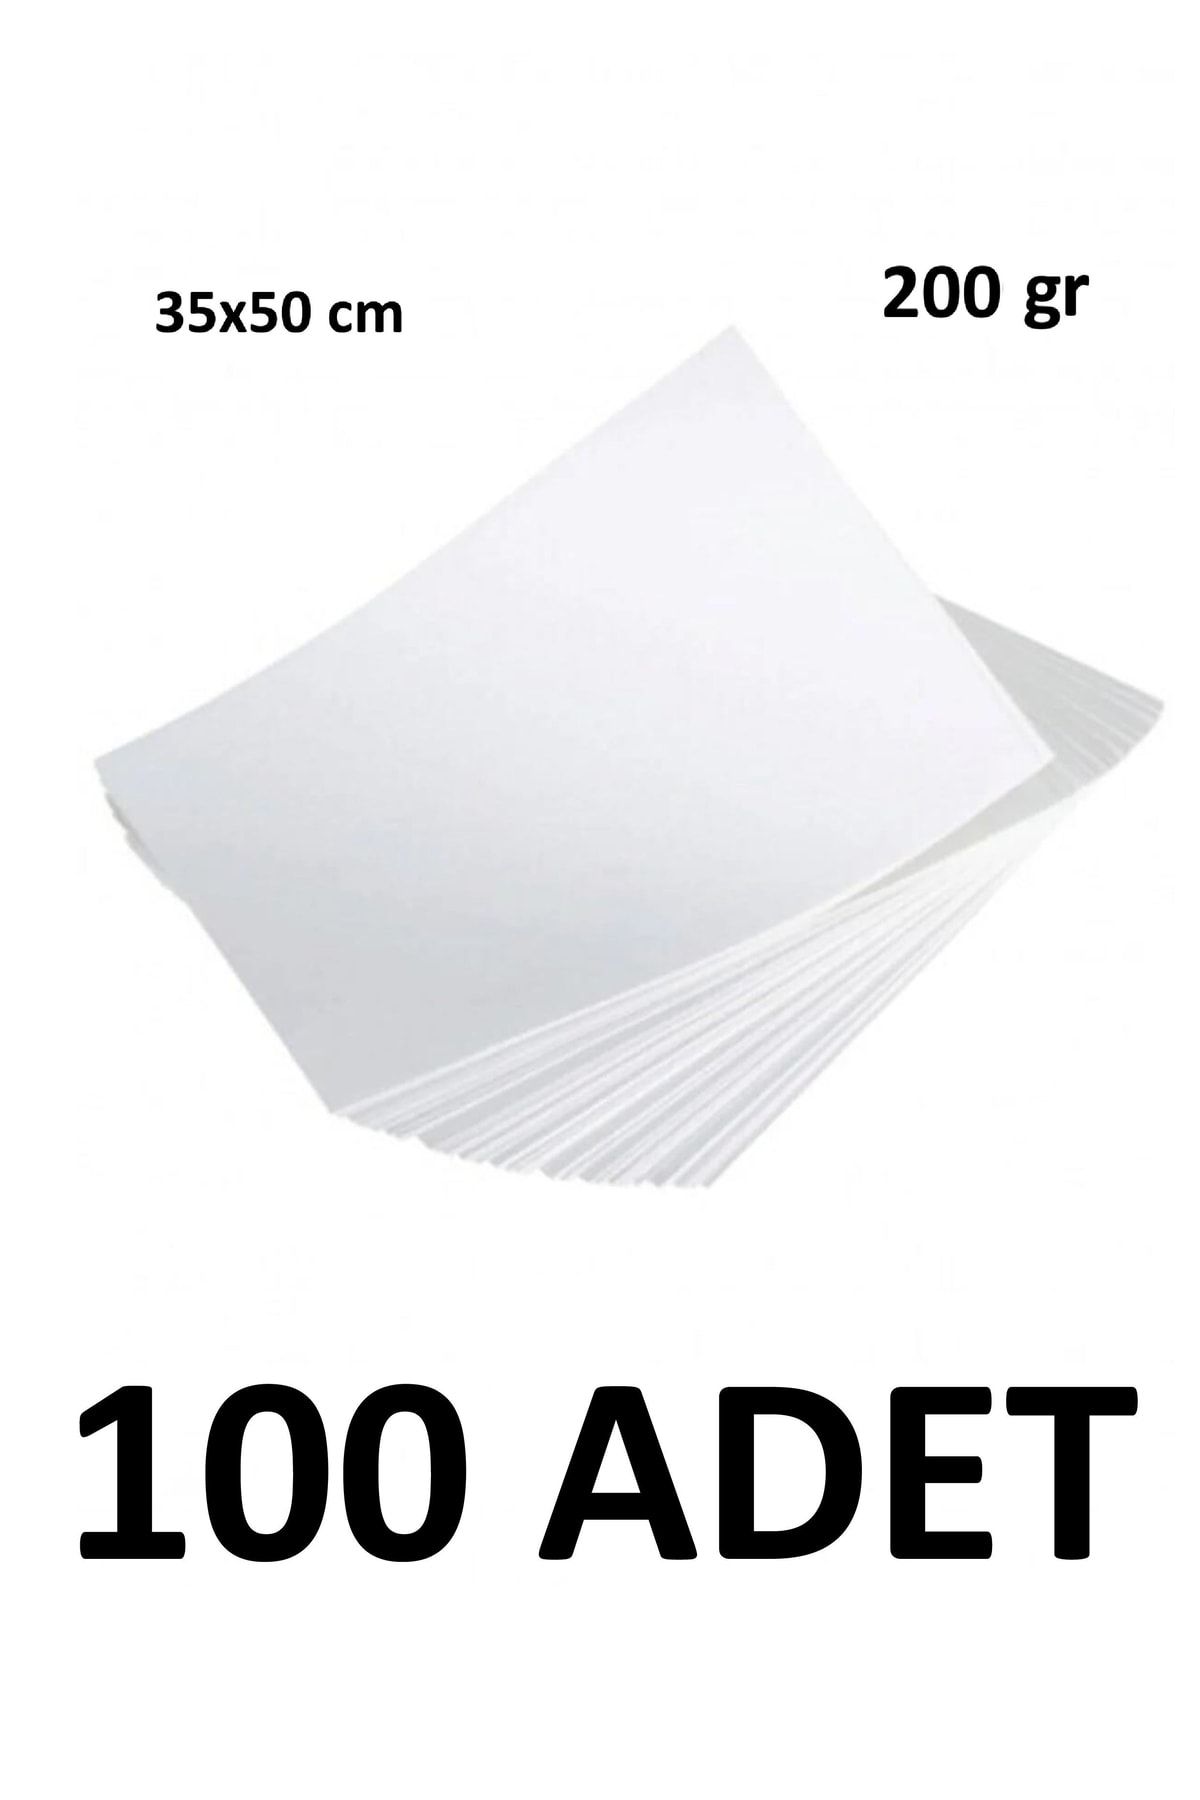 Keskin Color 100 Adet Karatis Art Beyaz Resim Kağıdı 35 X 50 Cm 200 Gr